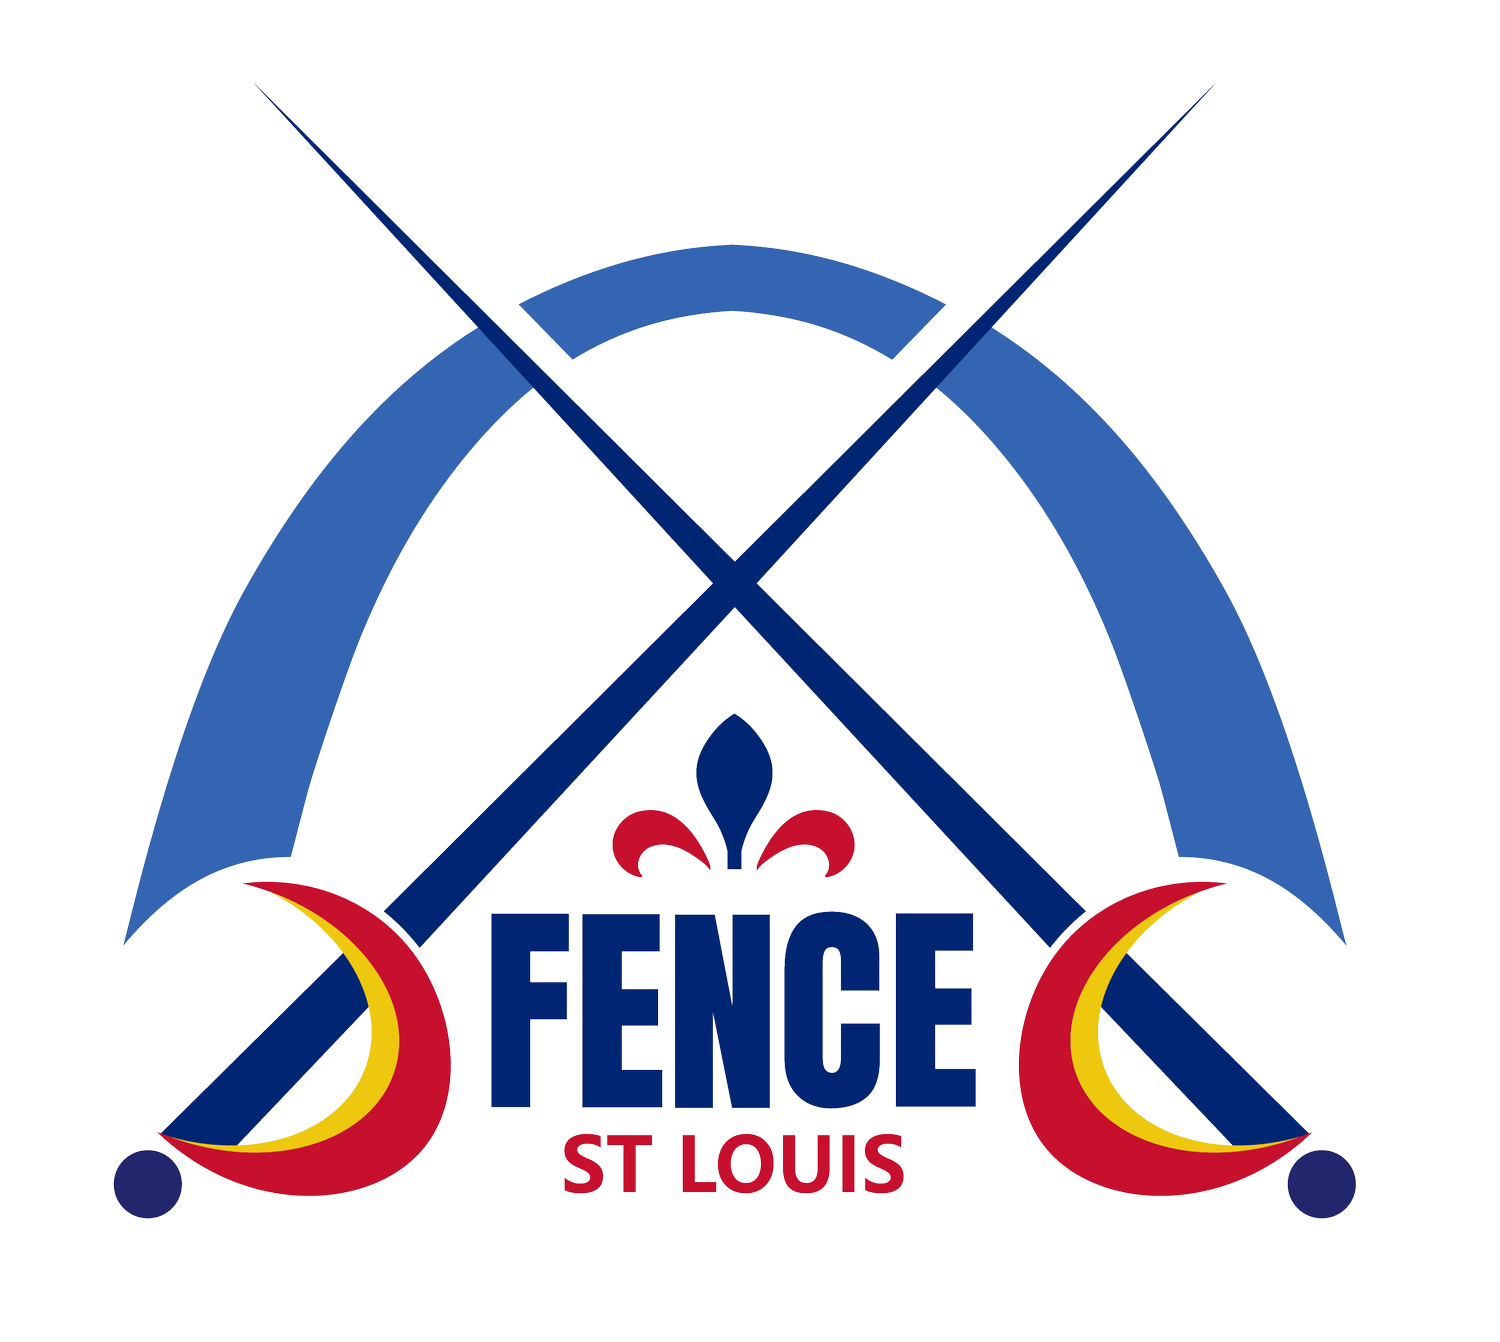 Fence St. Louis